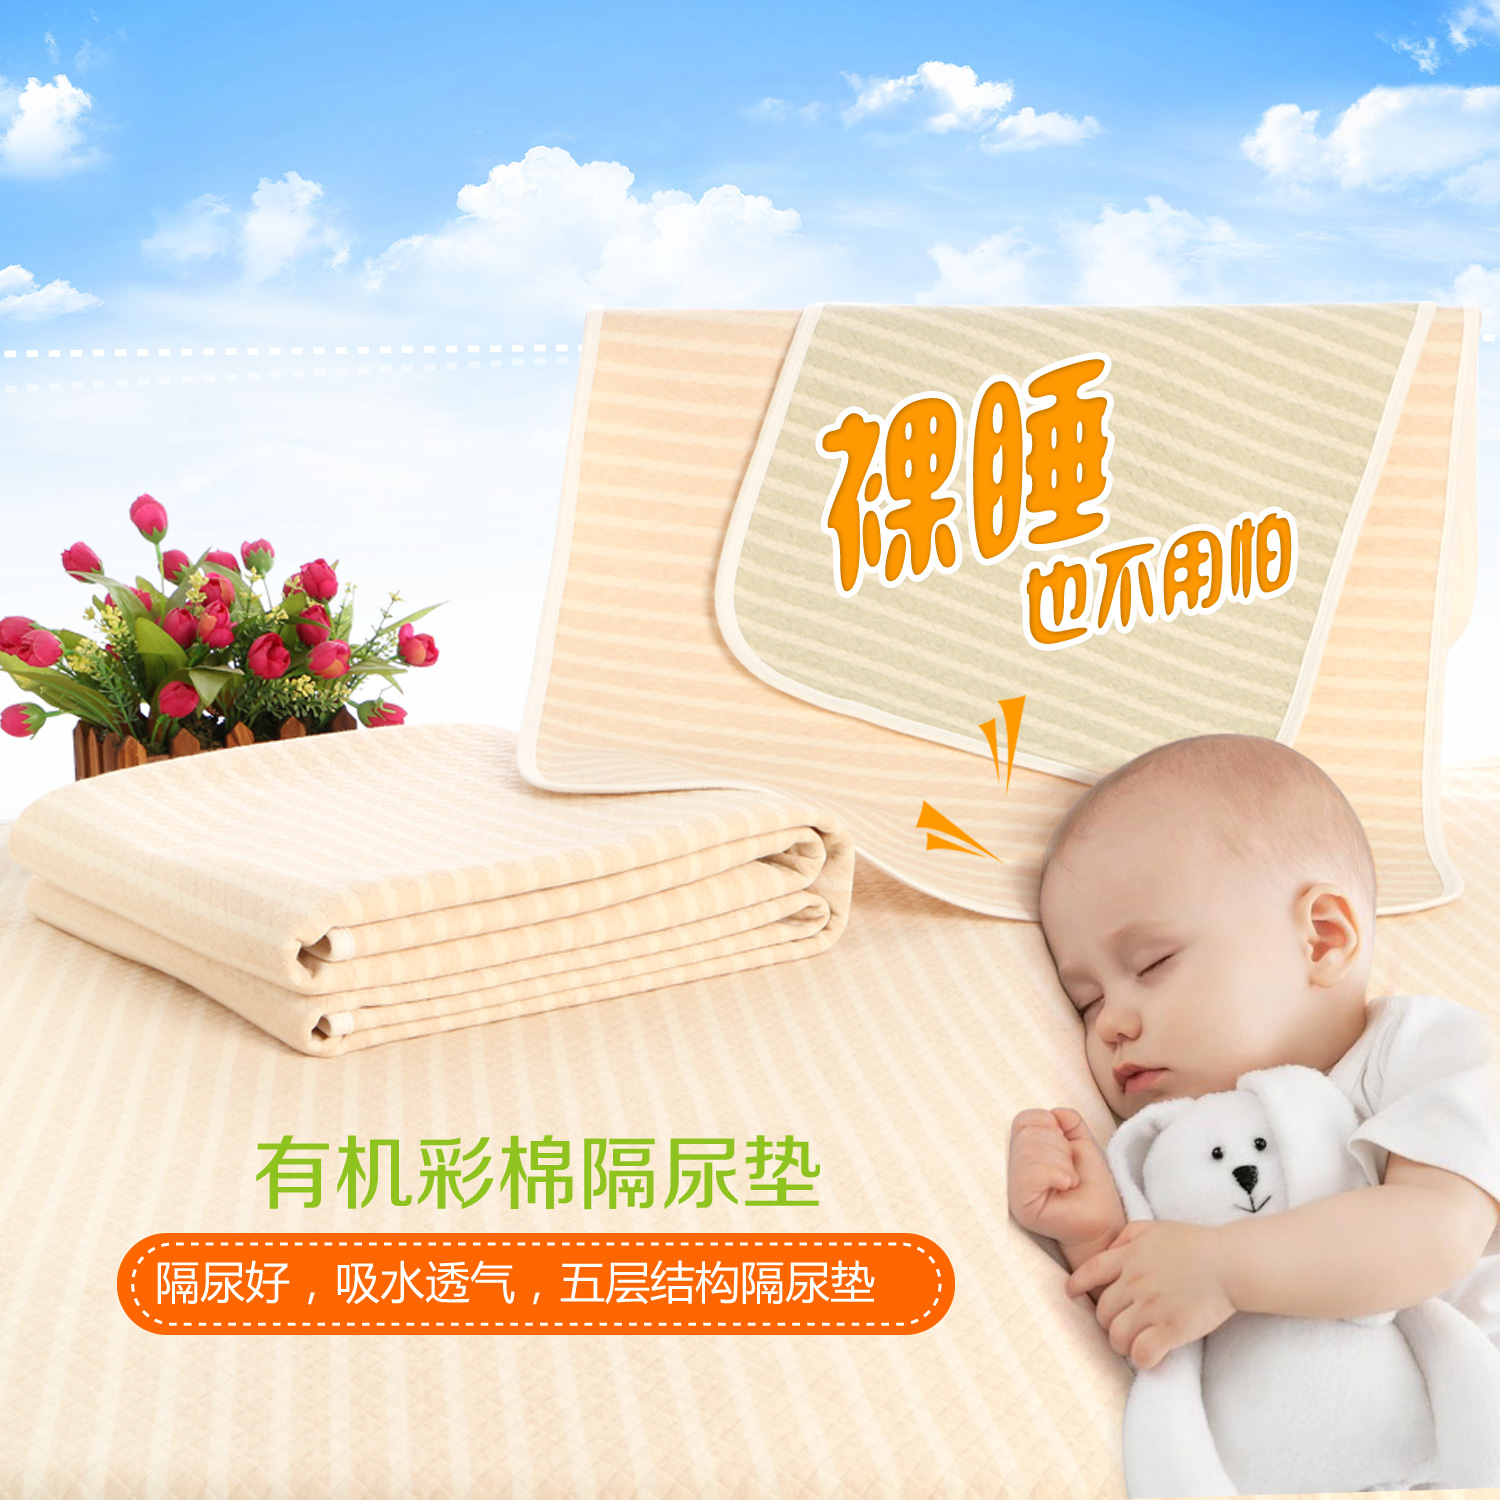 婴儿加大隔尿垫有机彩棉环保透气防水宝宝纯棉可洗床垫用品四季款